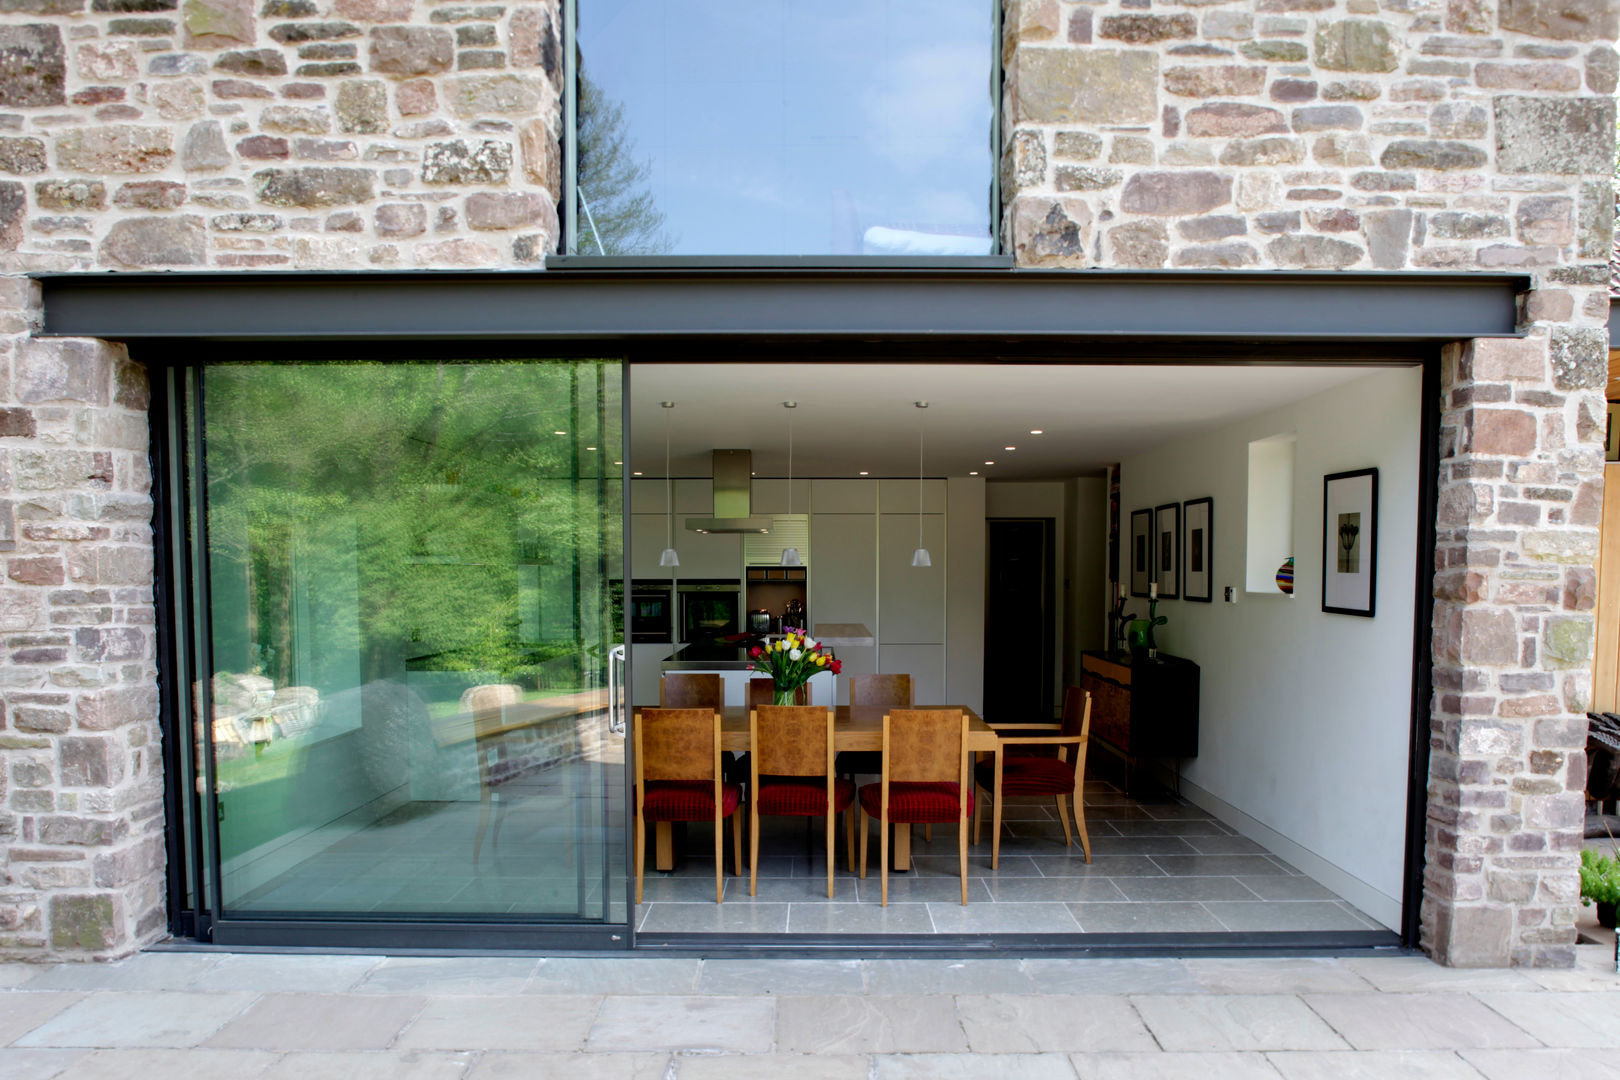 Veddw Farm, Monmouthshire, Hall + Bednarczyk Architects Hall + Bednarczyk Architects Casas modernas: Ideas, diseños y decoración